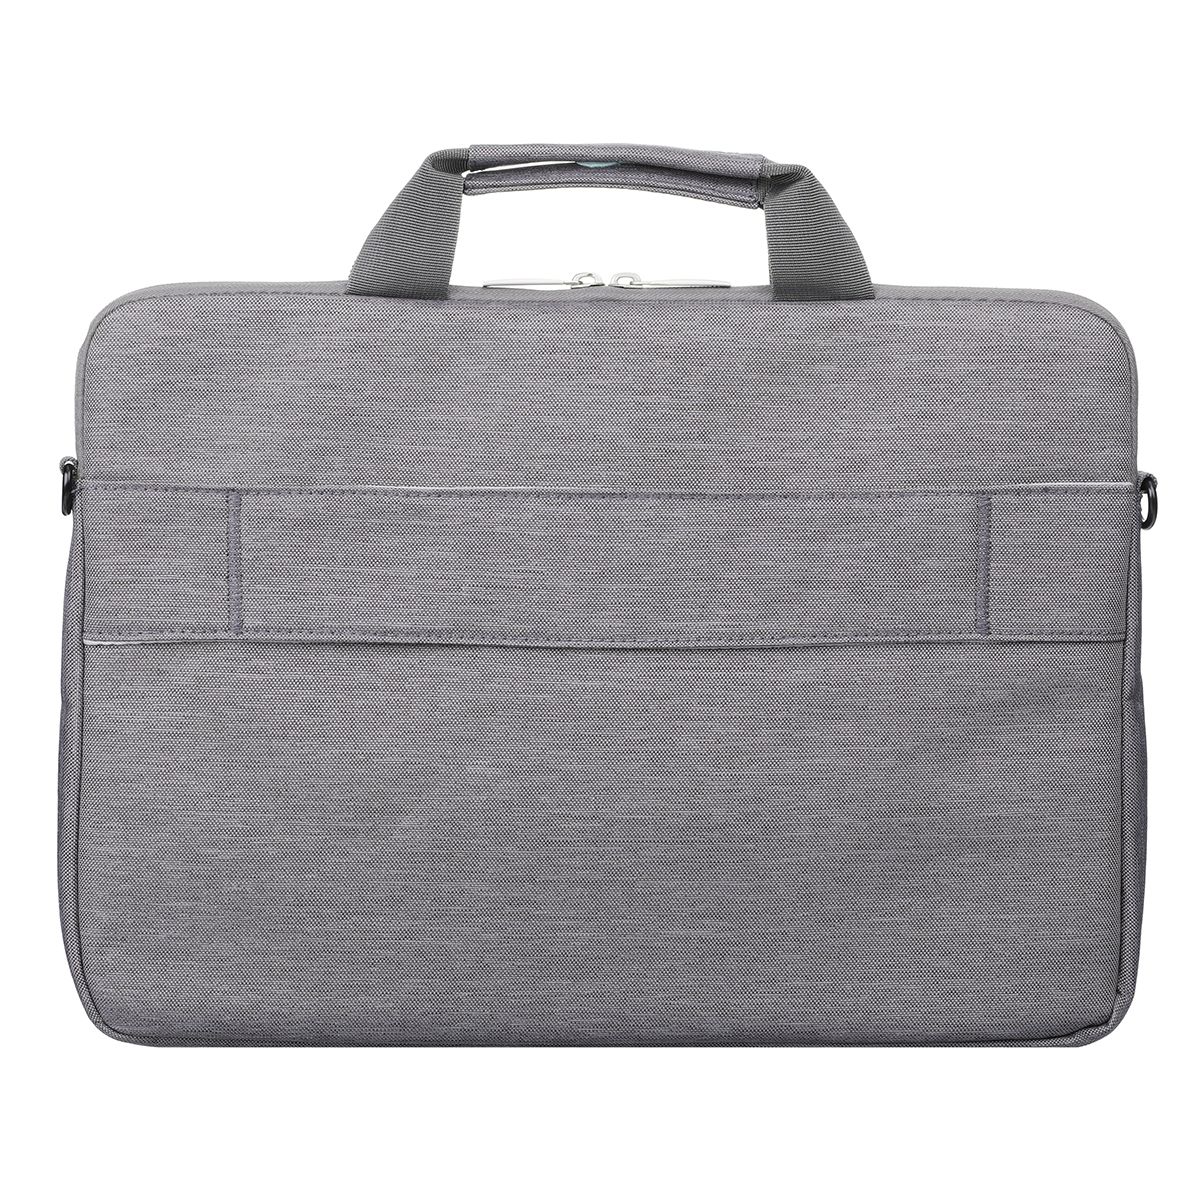 Waterproof-Laptop-Bag-Shoulder-Bag-Messenger-Bag-Handbag-Notebook-Sleeve-with-Shoulder-Strap-for-156-1751536